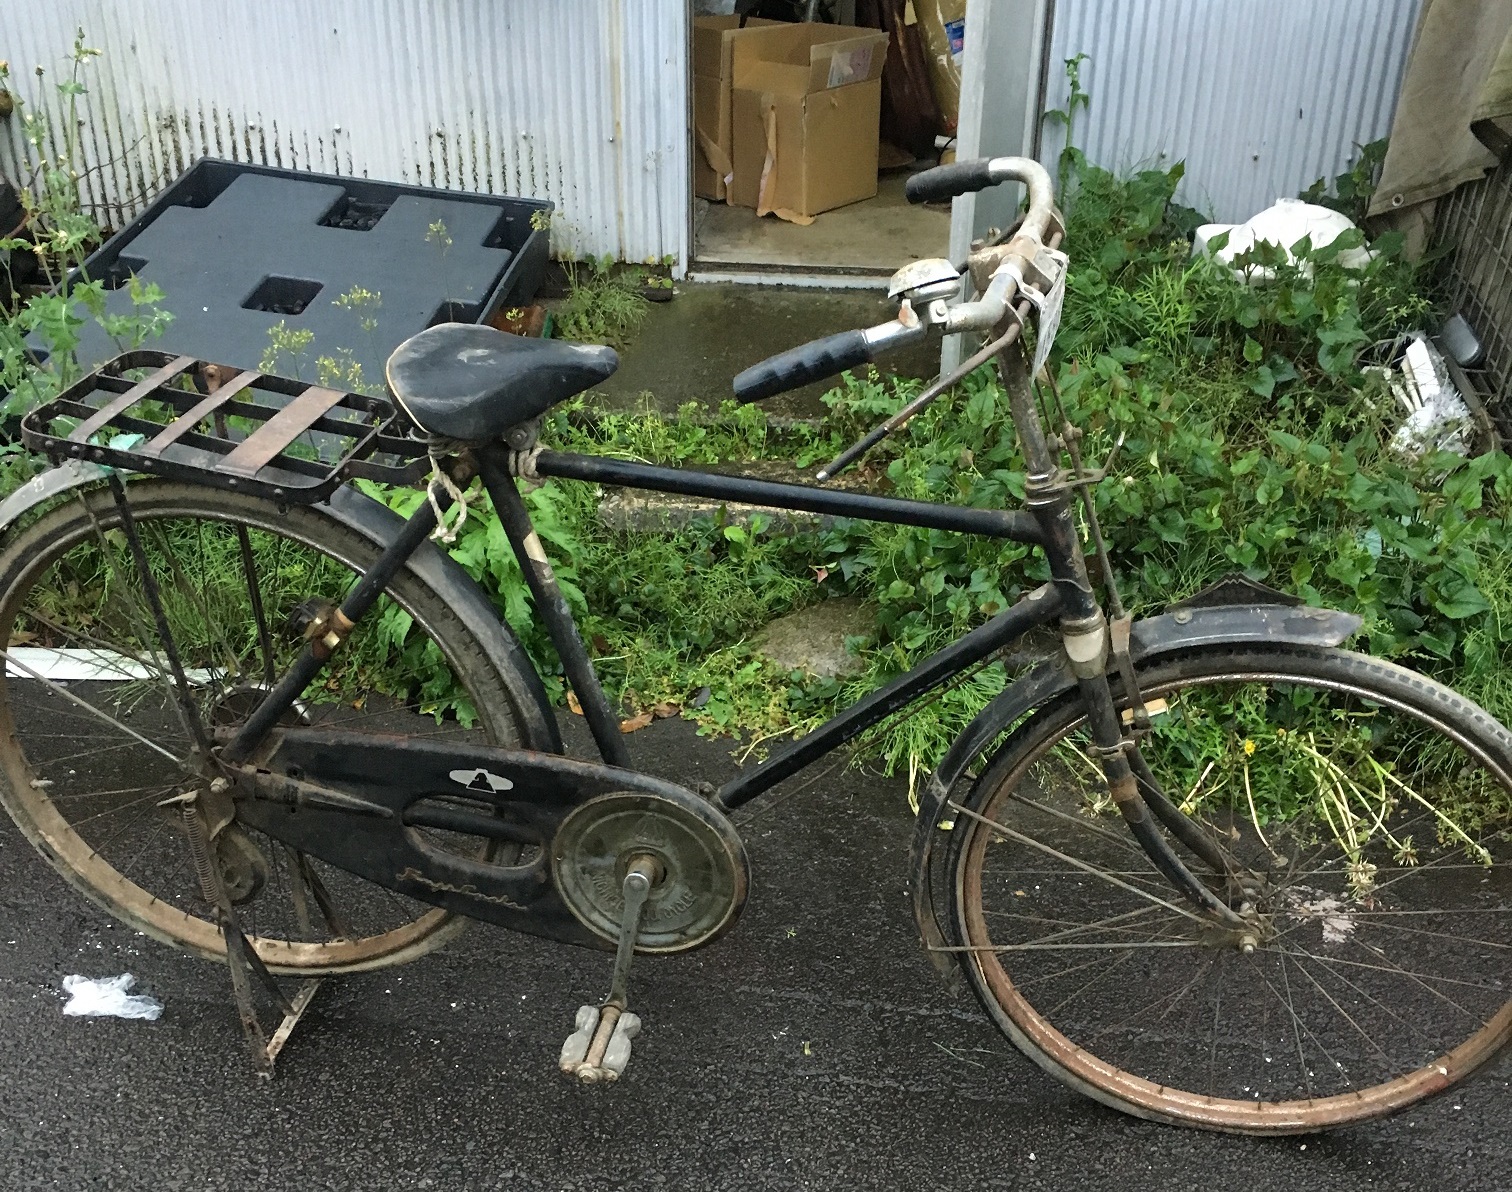 実用車 安藤自転車 威力号 昭和レトロ - 広島県の自転車